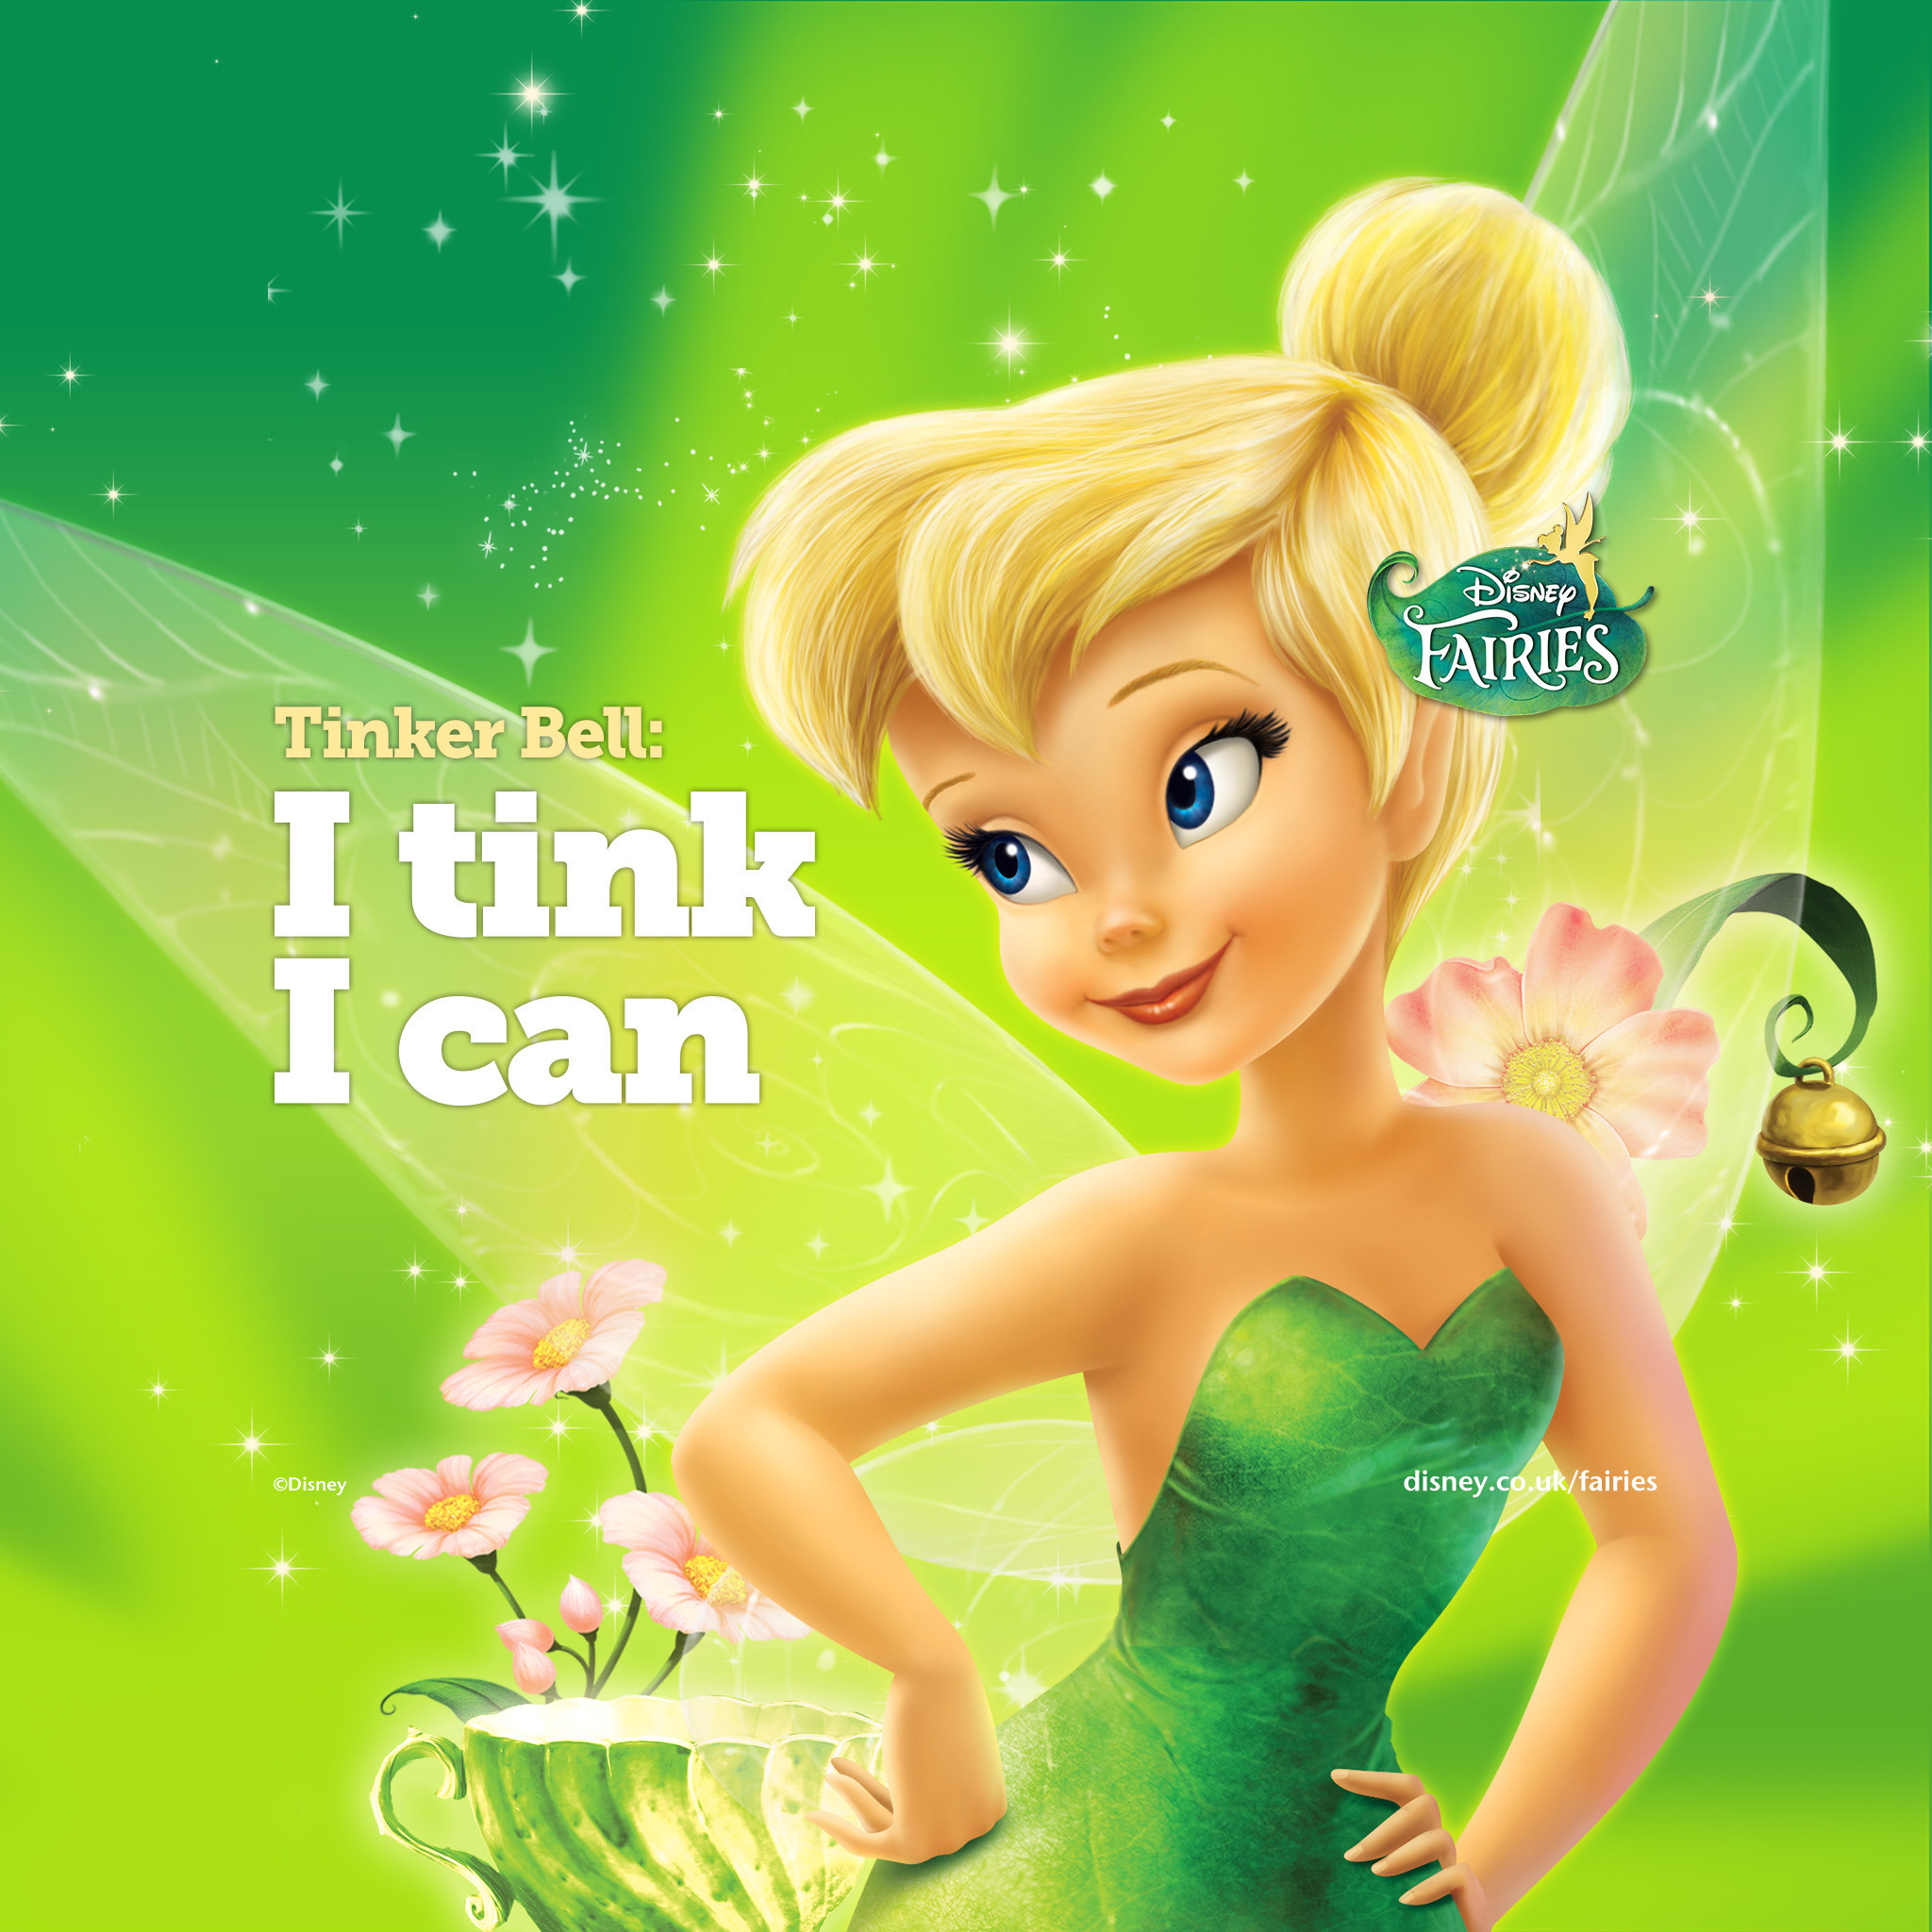 Disney Fairies Tinkerbell , HD Wallpaper & Backgrounds